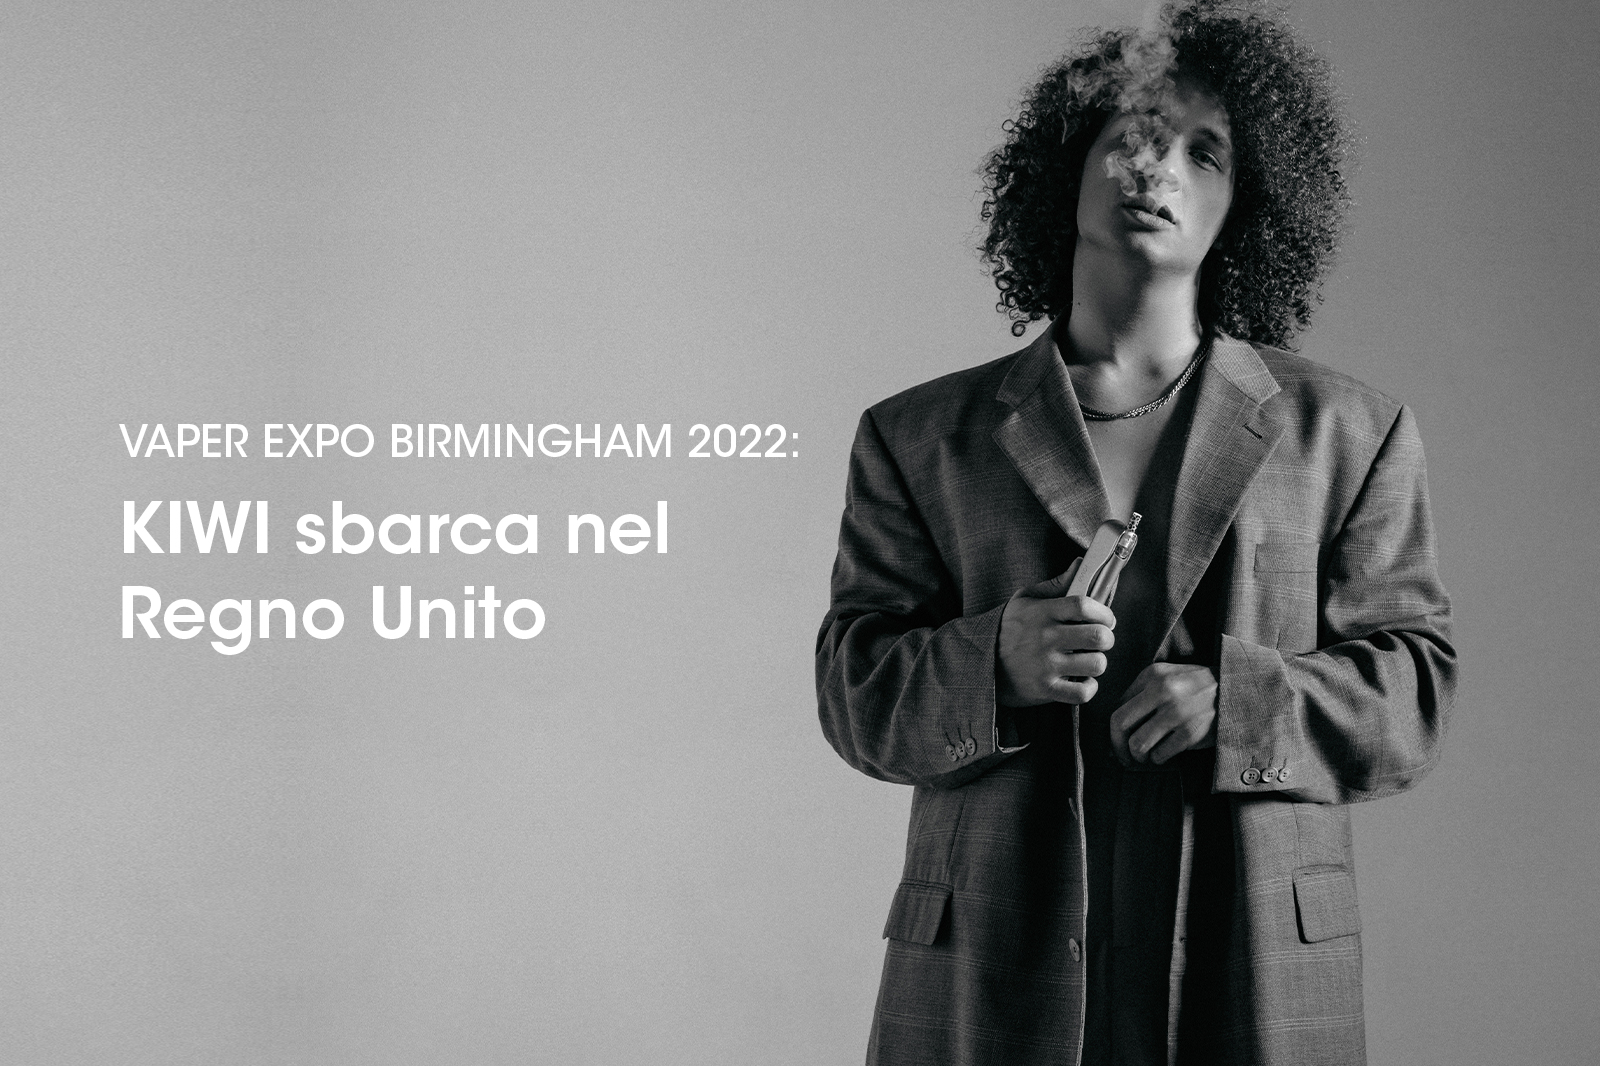 Vaper Expo Birmingham 2022: KIWI sbarca nel Regno Unito